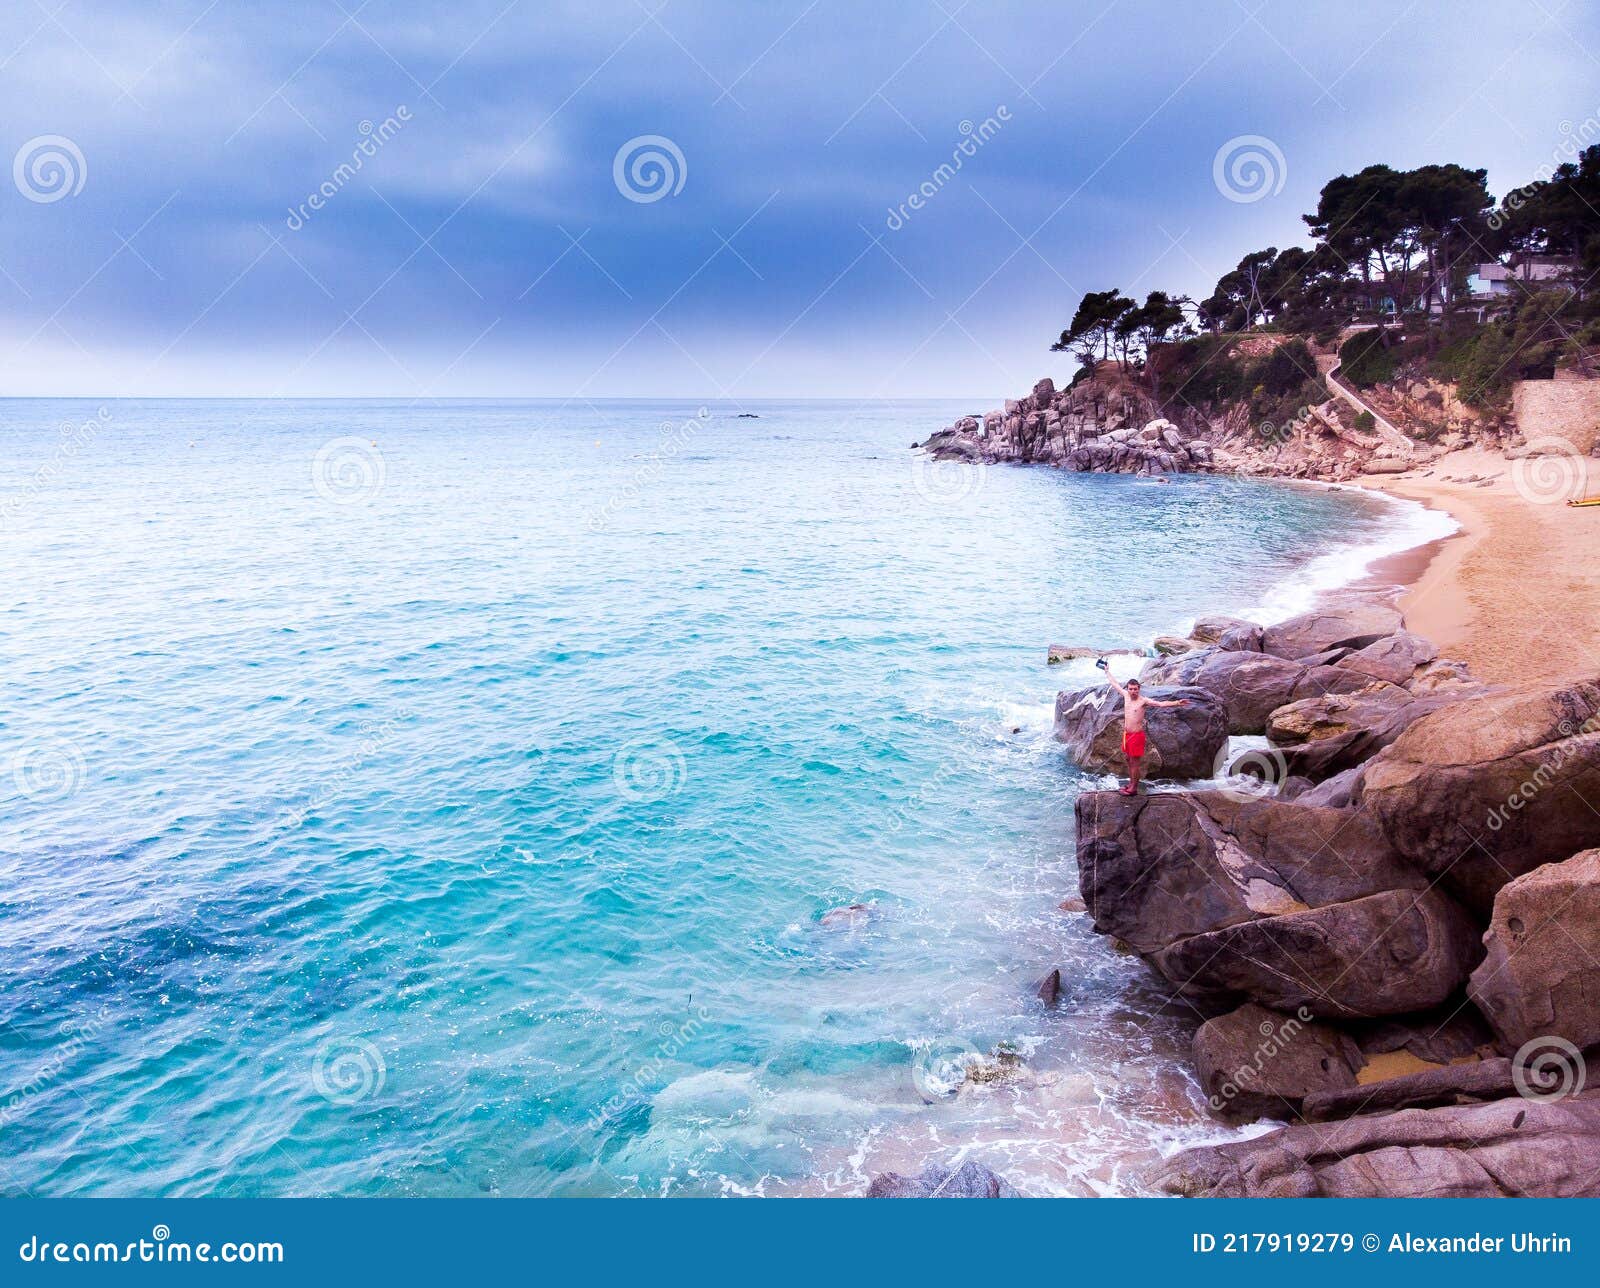 ÃÂerial view. rocks on the coast of lloret de mar in a beautiful summer day,sandy beach, costa brava, catalonia, spain.